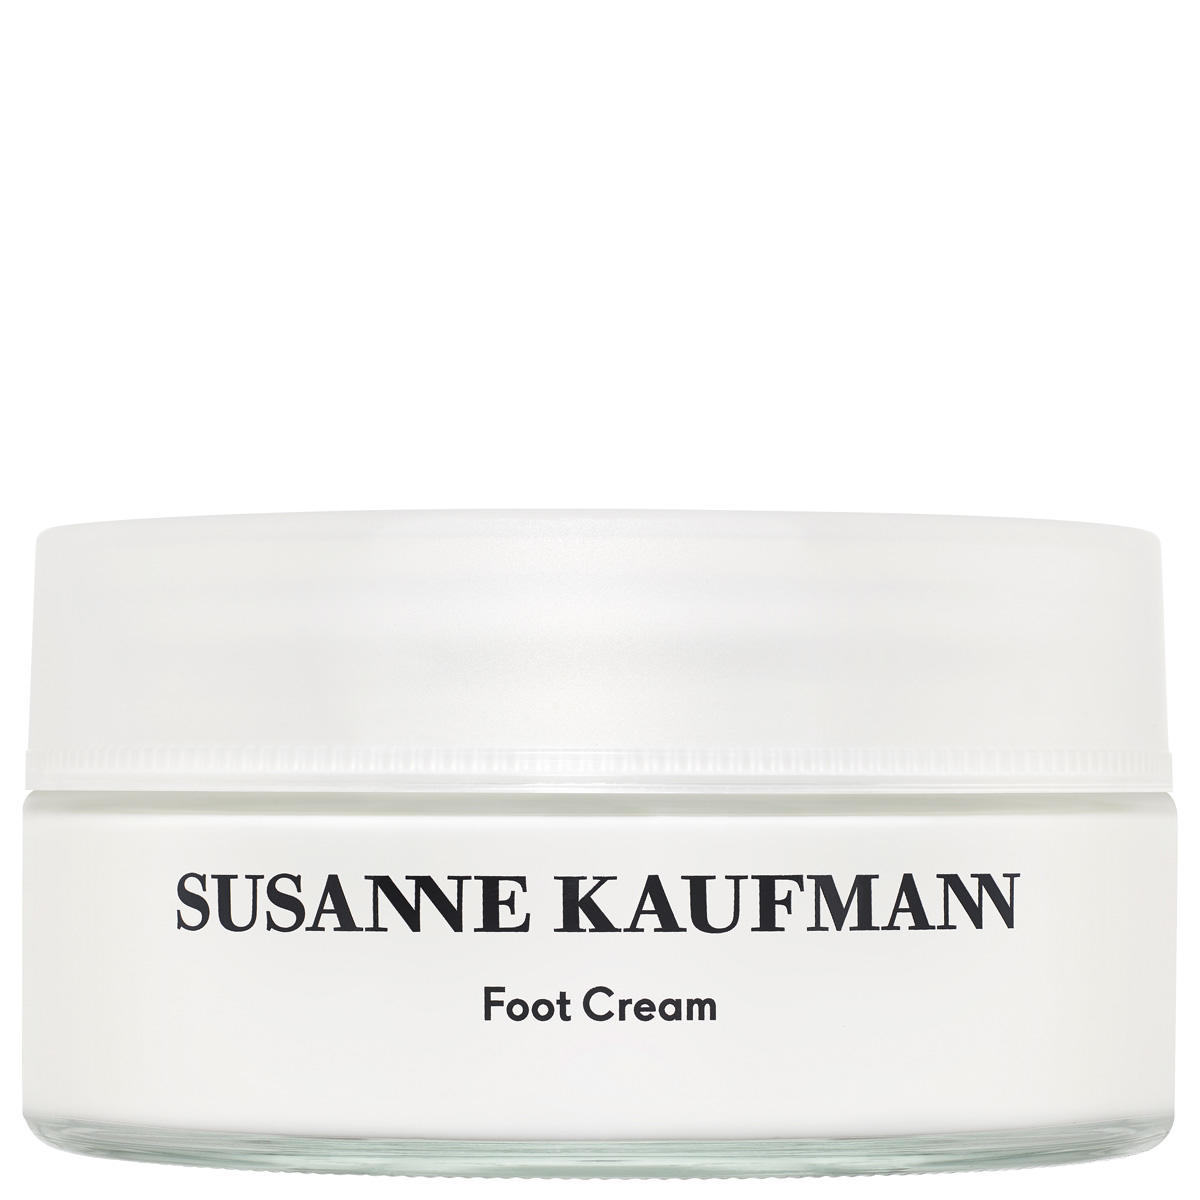 Susanne Kaufmann Réchauffement de la crème pour les pieds - Foot Cream 200 ml - 1